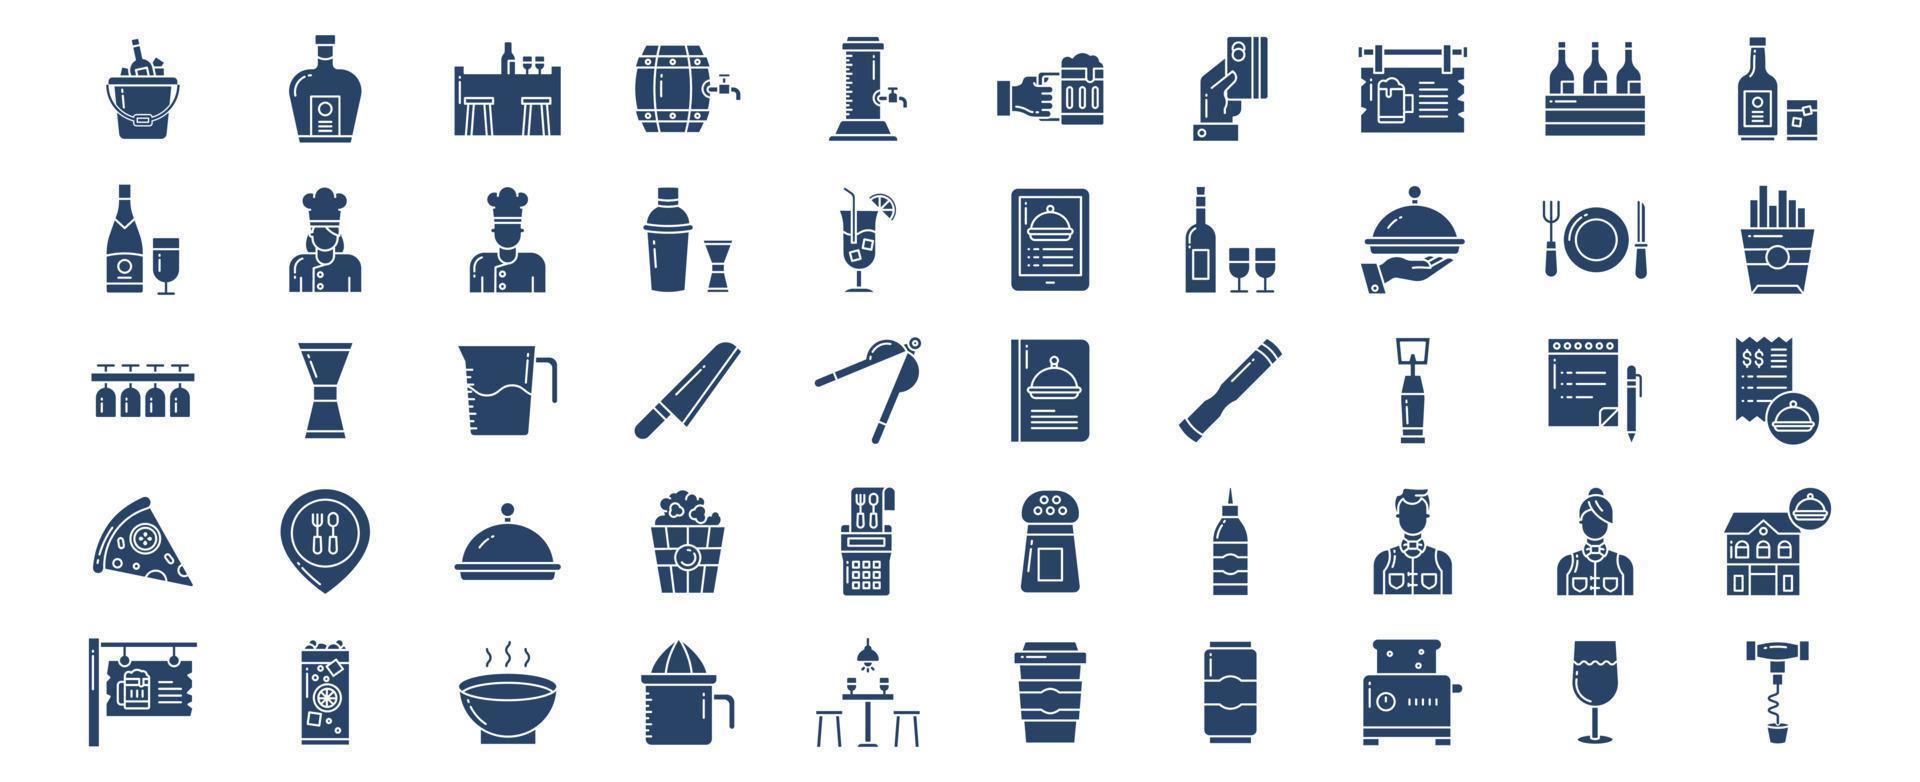 collection d'icônes liées au bar et au restaurant, y compris des icônes comme le seau à glace, la bière, etc. illustrations vectorielles, ensemble parfait de pixels vecteur